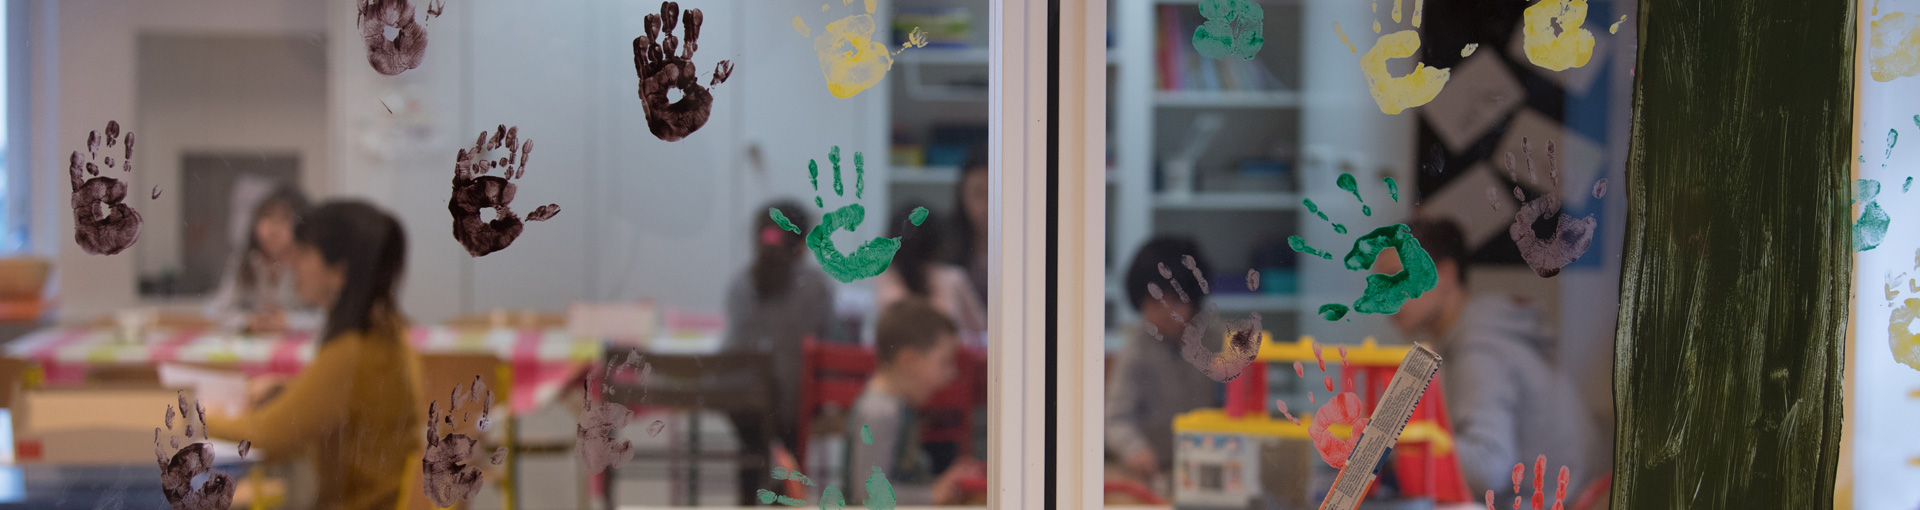 Une structure d'accueil vue de l'extérieur avec des peintures de mains d'enfants